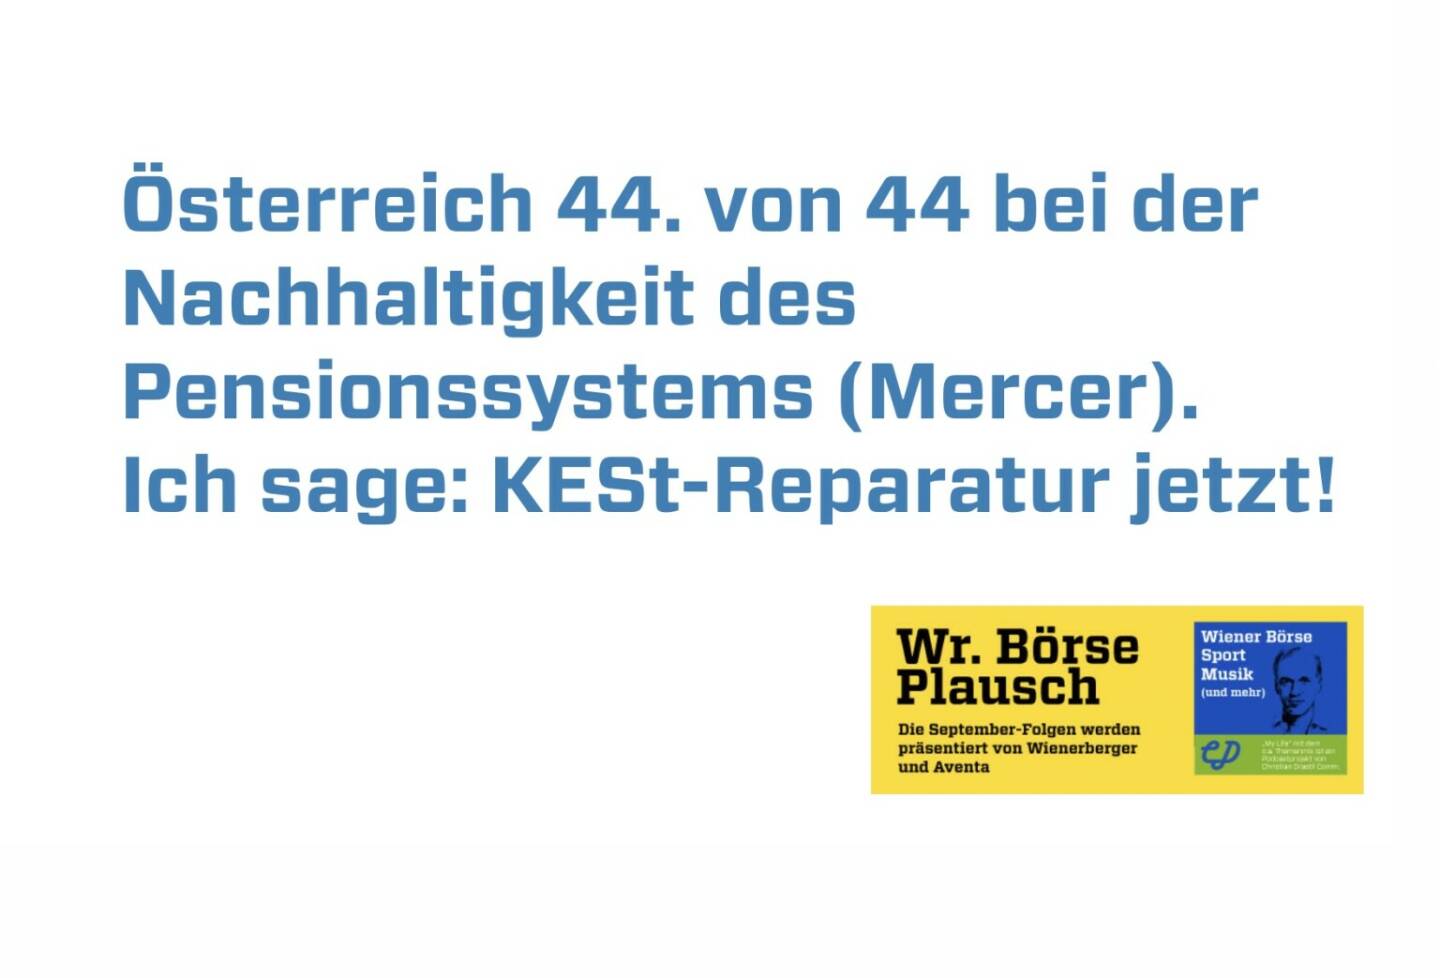 Österreich 44. von 44 bei der Nachhaltigkeit des Pensionssystems (Mercer). Ich sage: KESt-Reparatur jetzt! Dies und mehr in Folge S3/26 der Wiener Börse Pläusche im Rahmen von http://www.christian-drastil.com/podcast . 